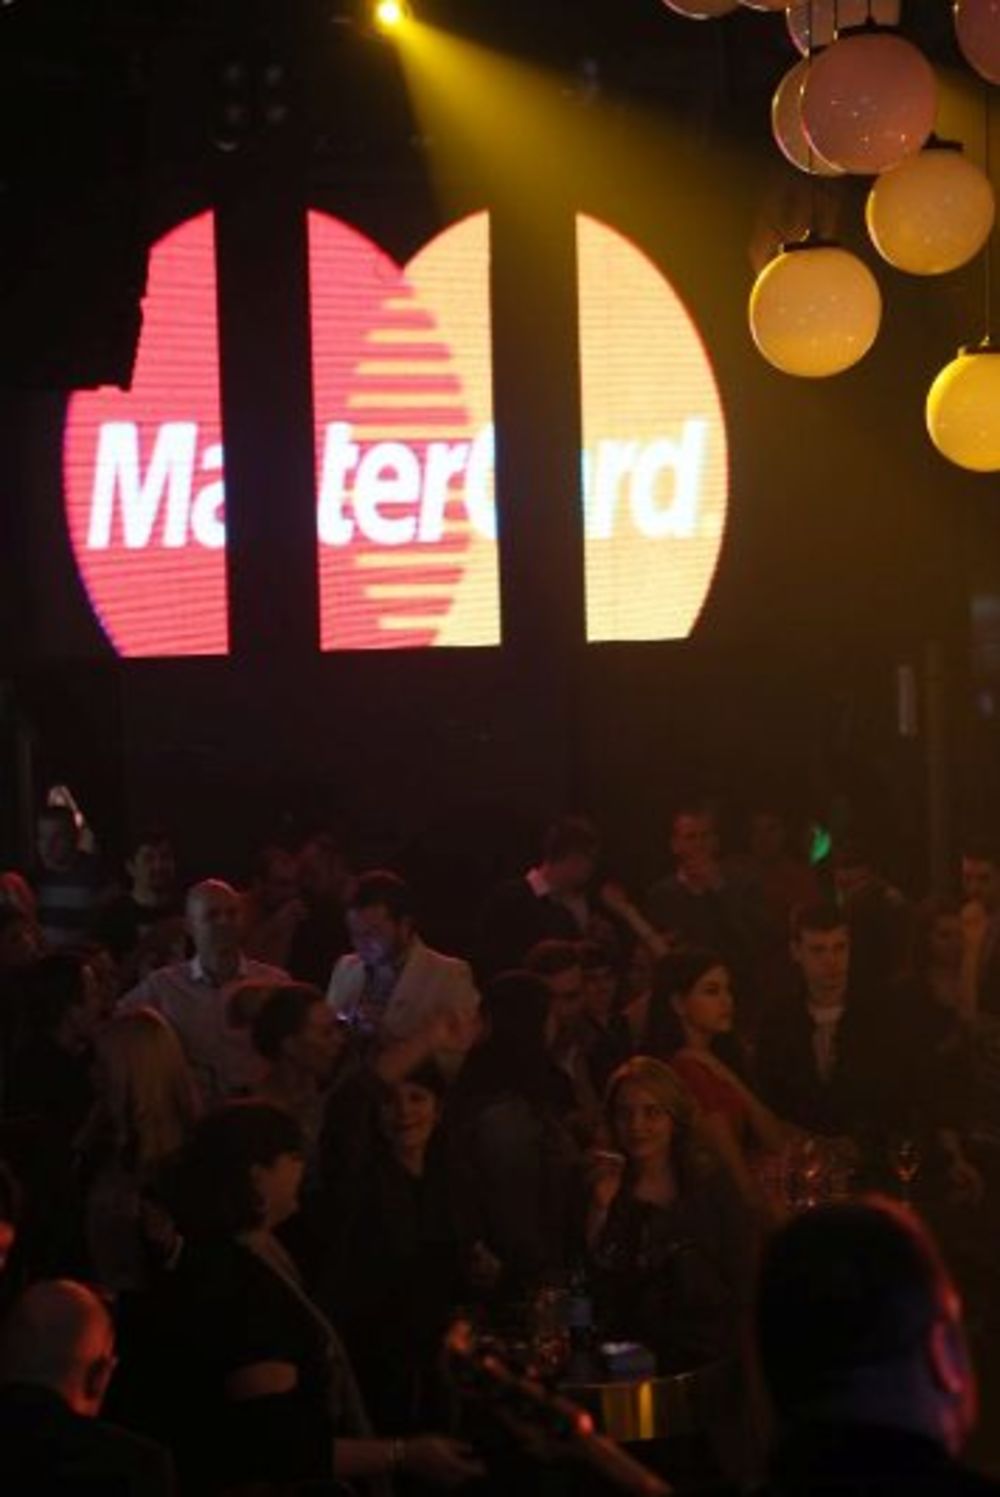 X Factor Adria proslavila je uspeh žurkom Factor VIP party u beogradskom klubu Loft,  ekskluzivnim događajem za partnere i saradnike iz medija. Za dobru atmosferu na MasterCard X Factor VIP žurki bili su zaduženi sadašnji i bivši učesnici X Factor-a: Daniel Ka